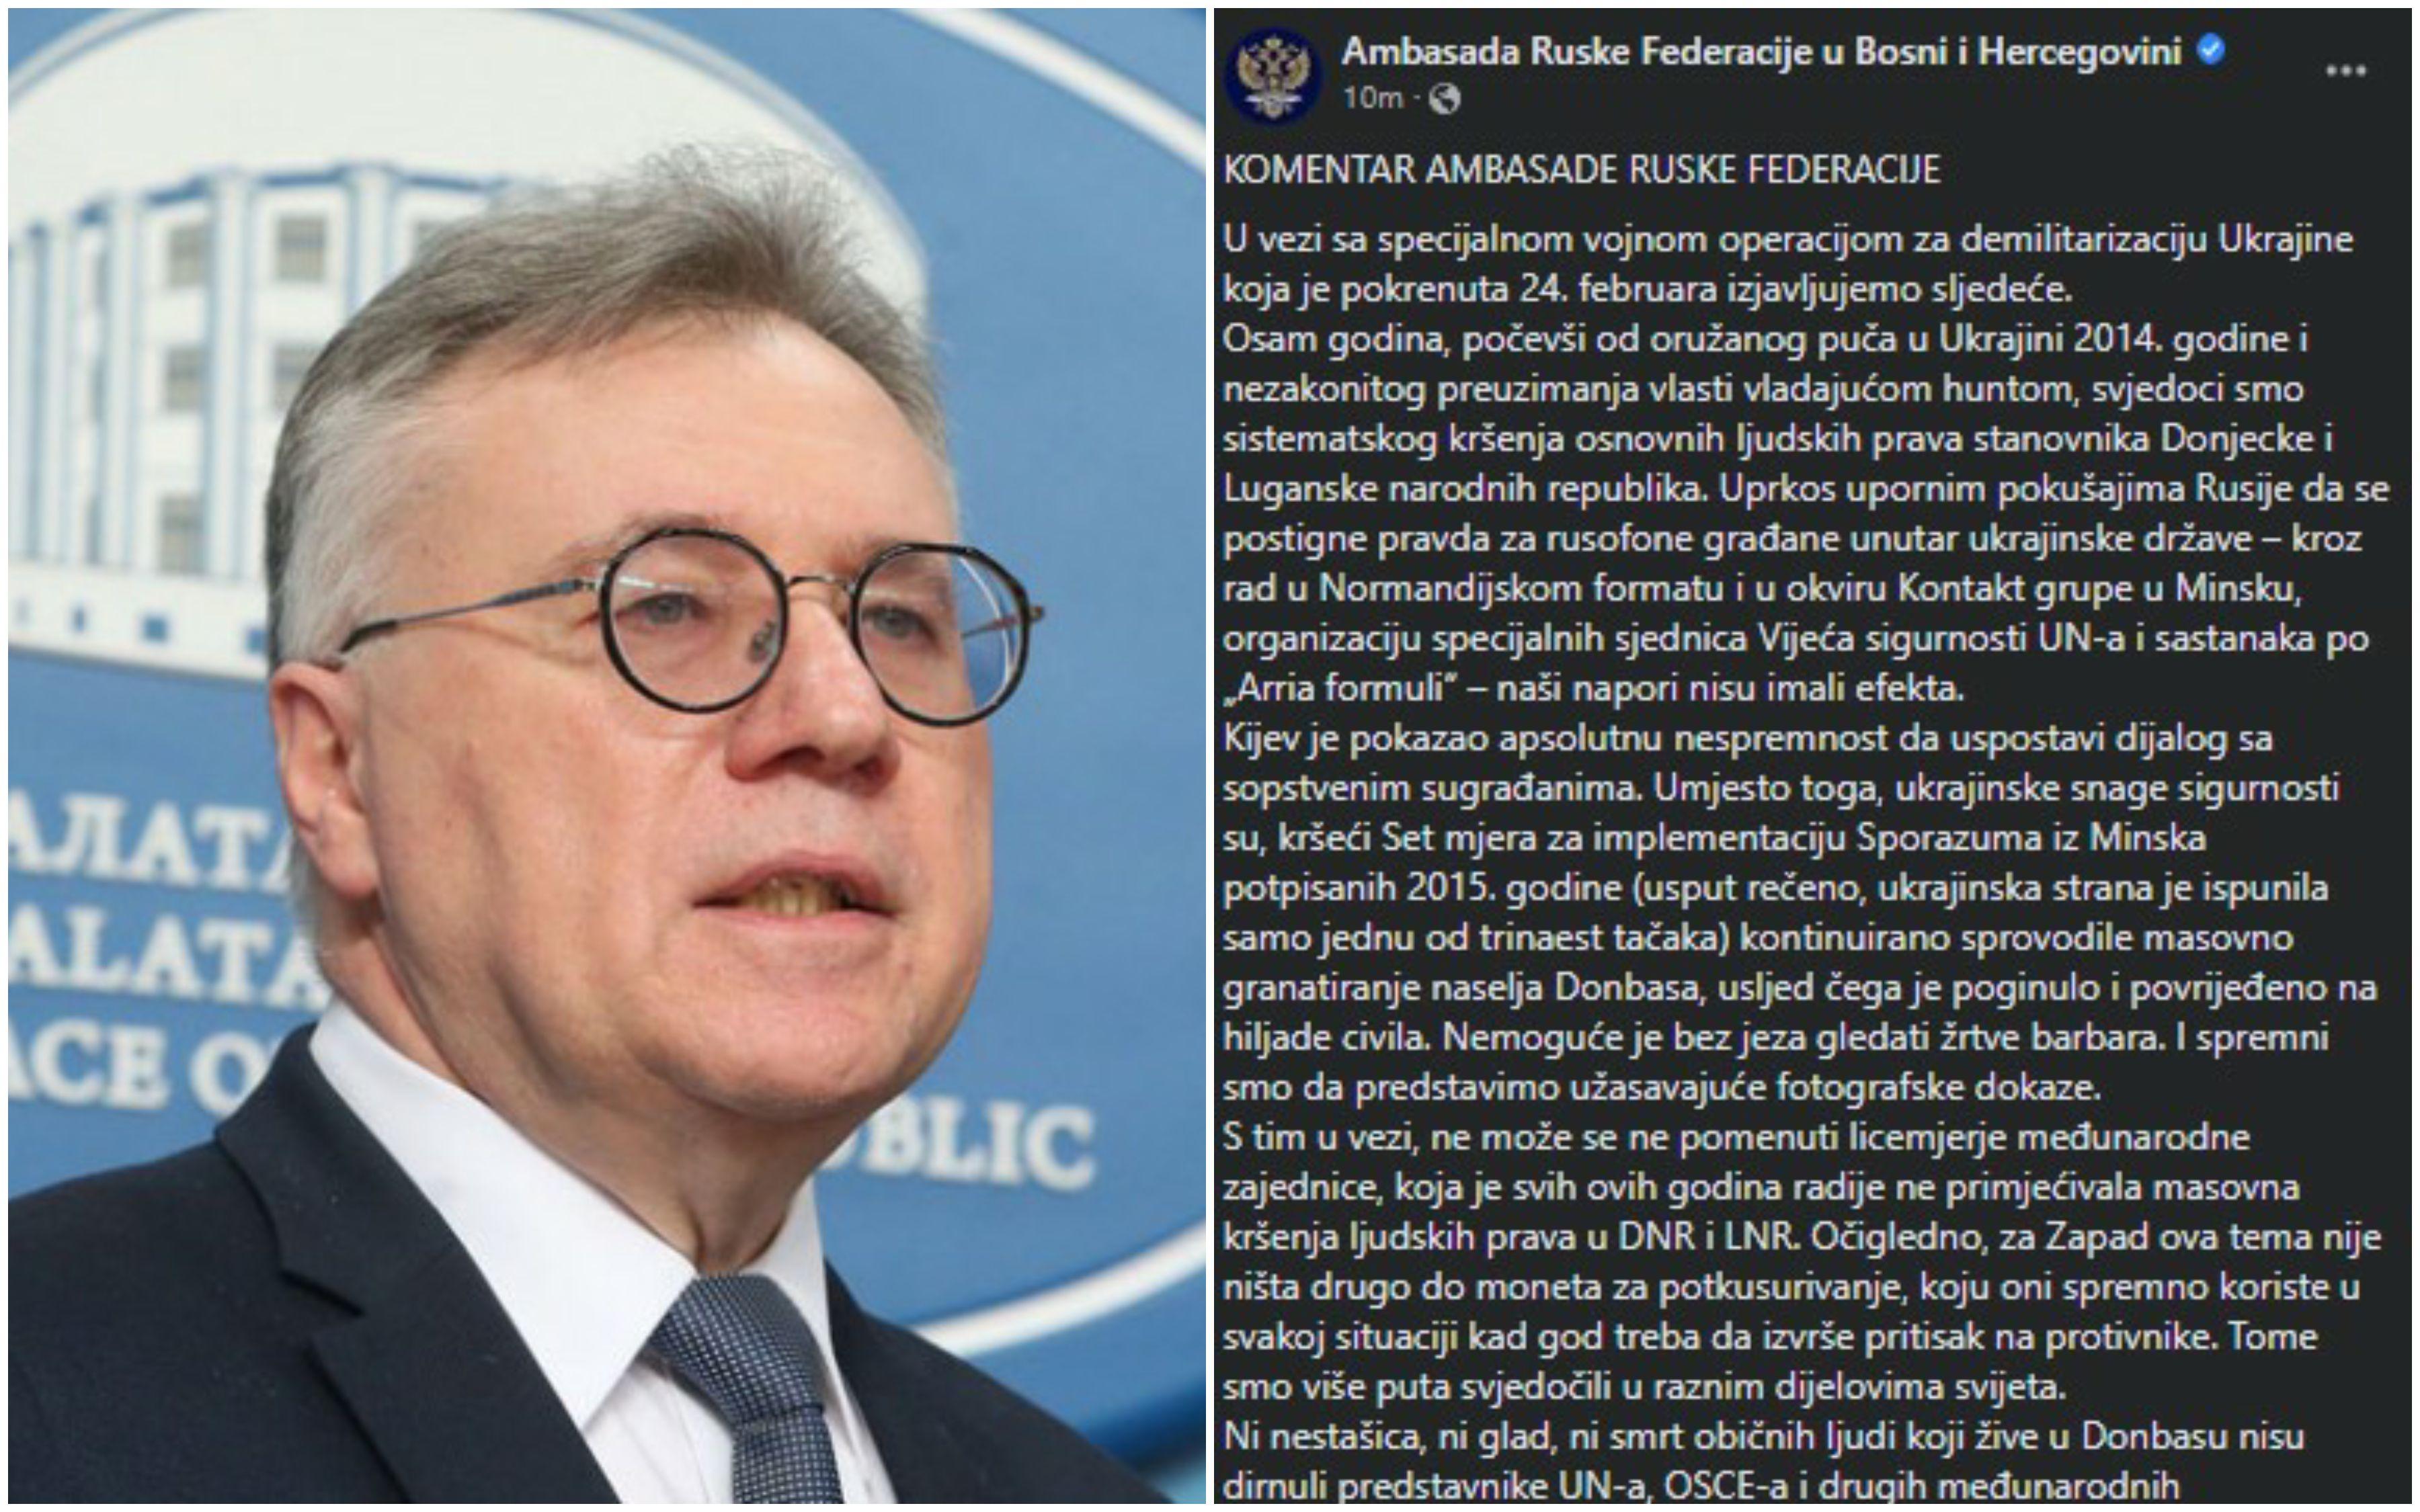 Ambasada Ruske Federacije u BiH optužila međunarodnu zajednicu za licemjerje